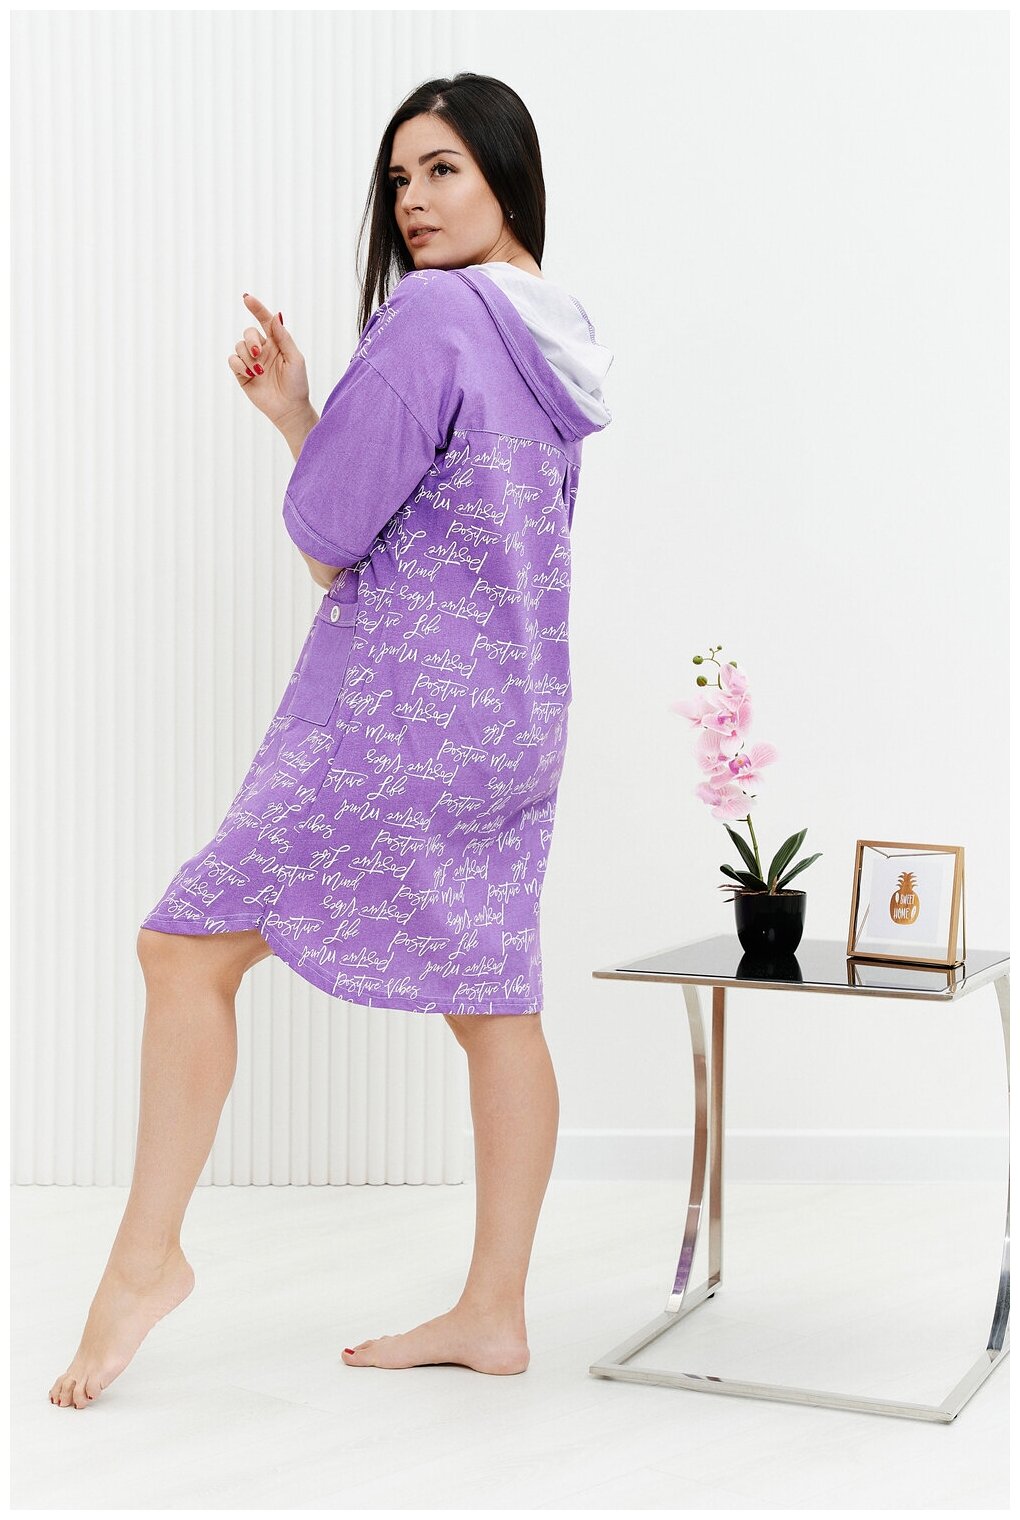 Халат Натали средней длины, укороченный рукав, капюшон, карманы, трикотажная, размер 52, фиолетовый - фотография № 12